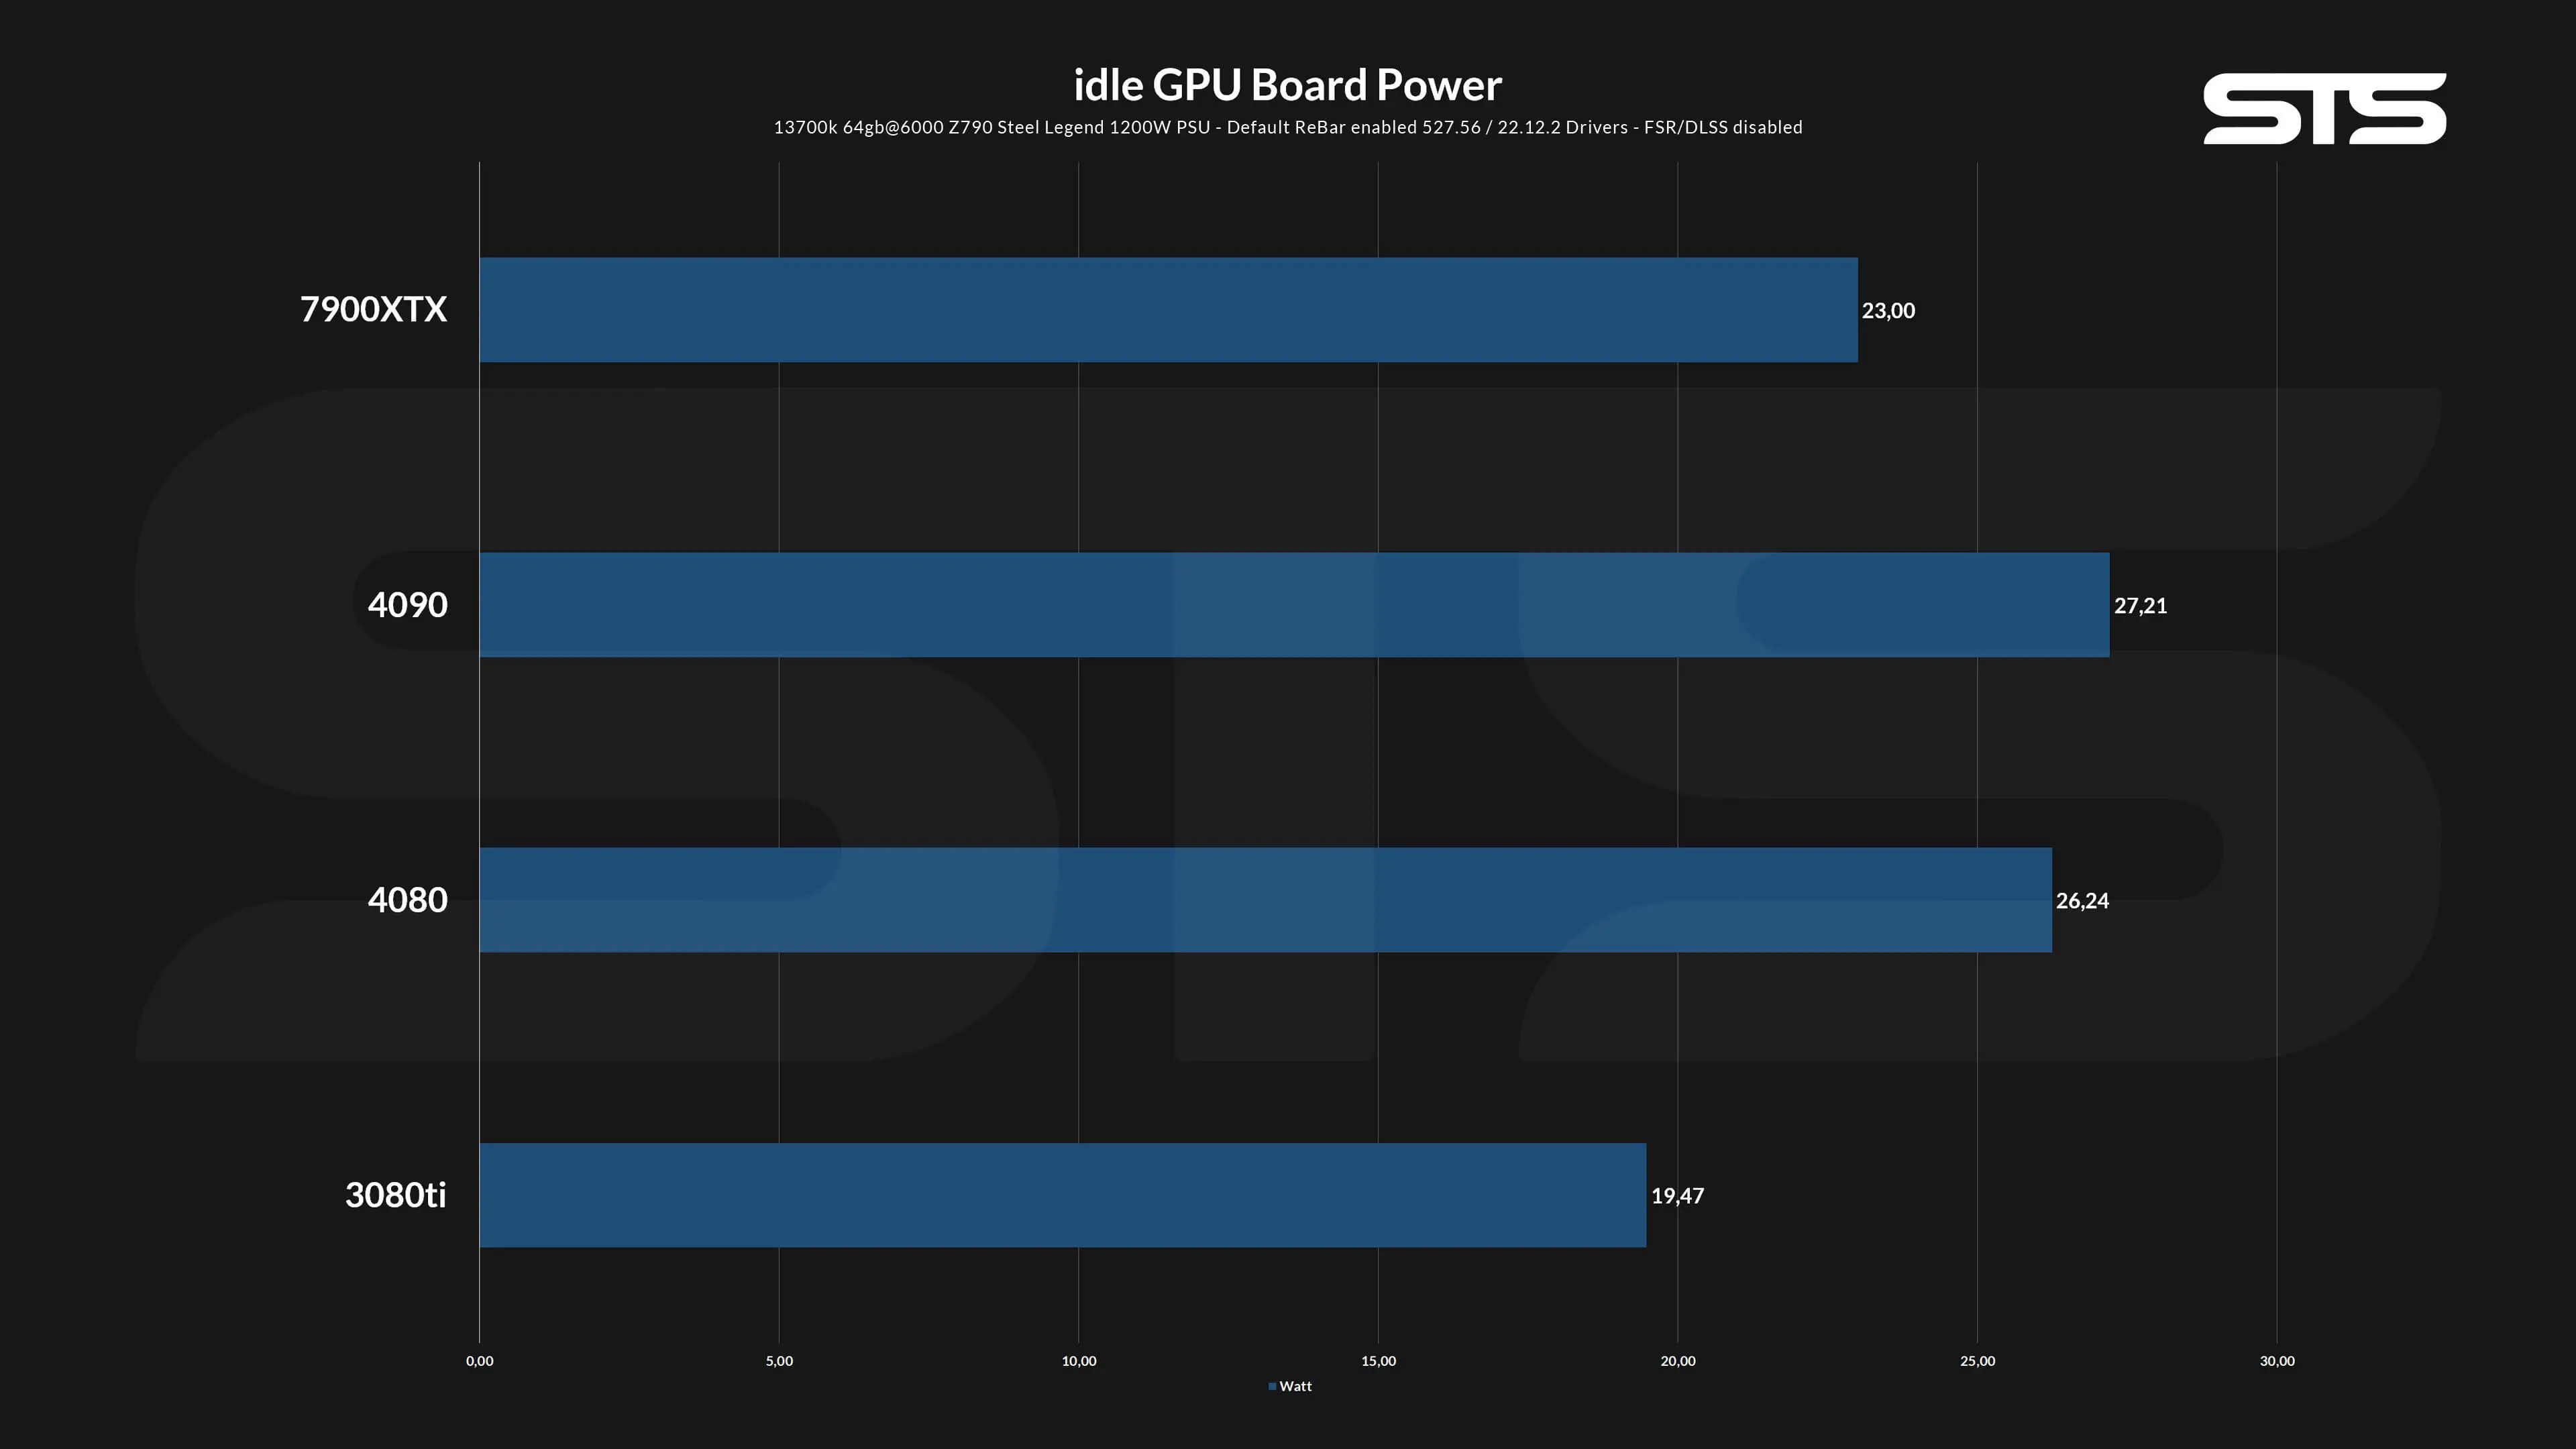 idle_board_power